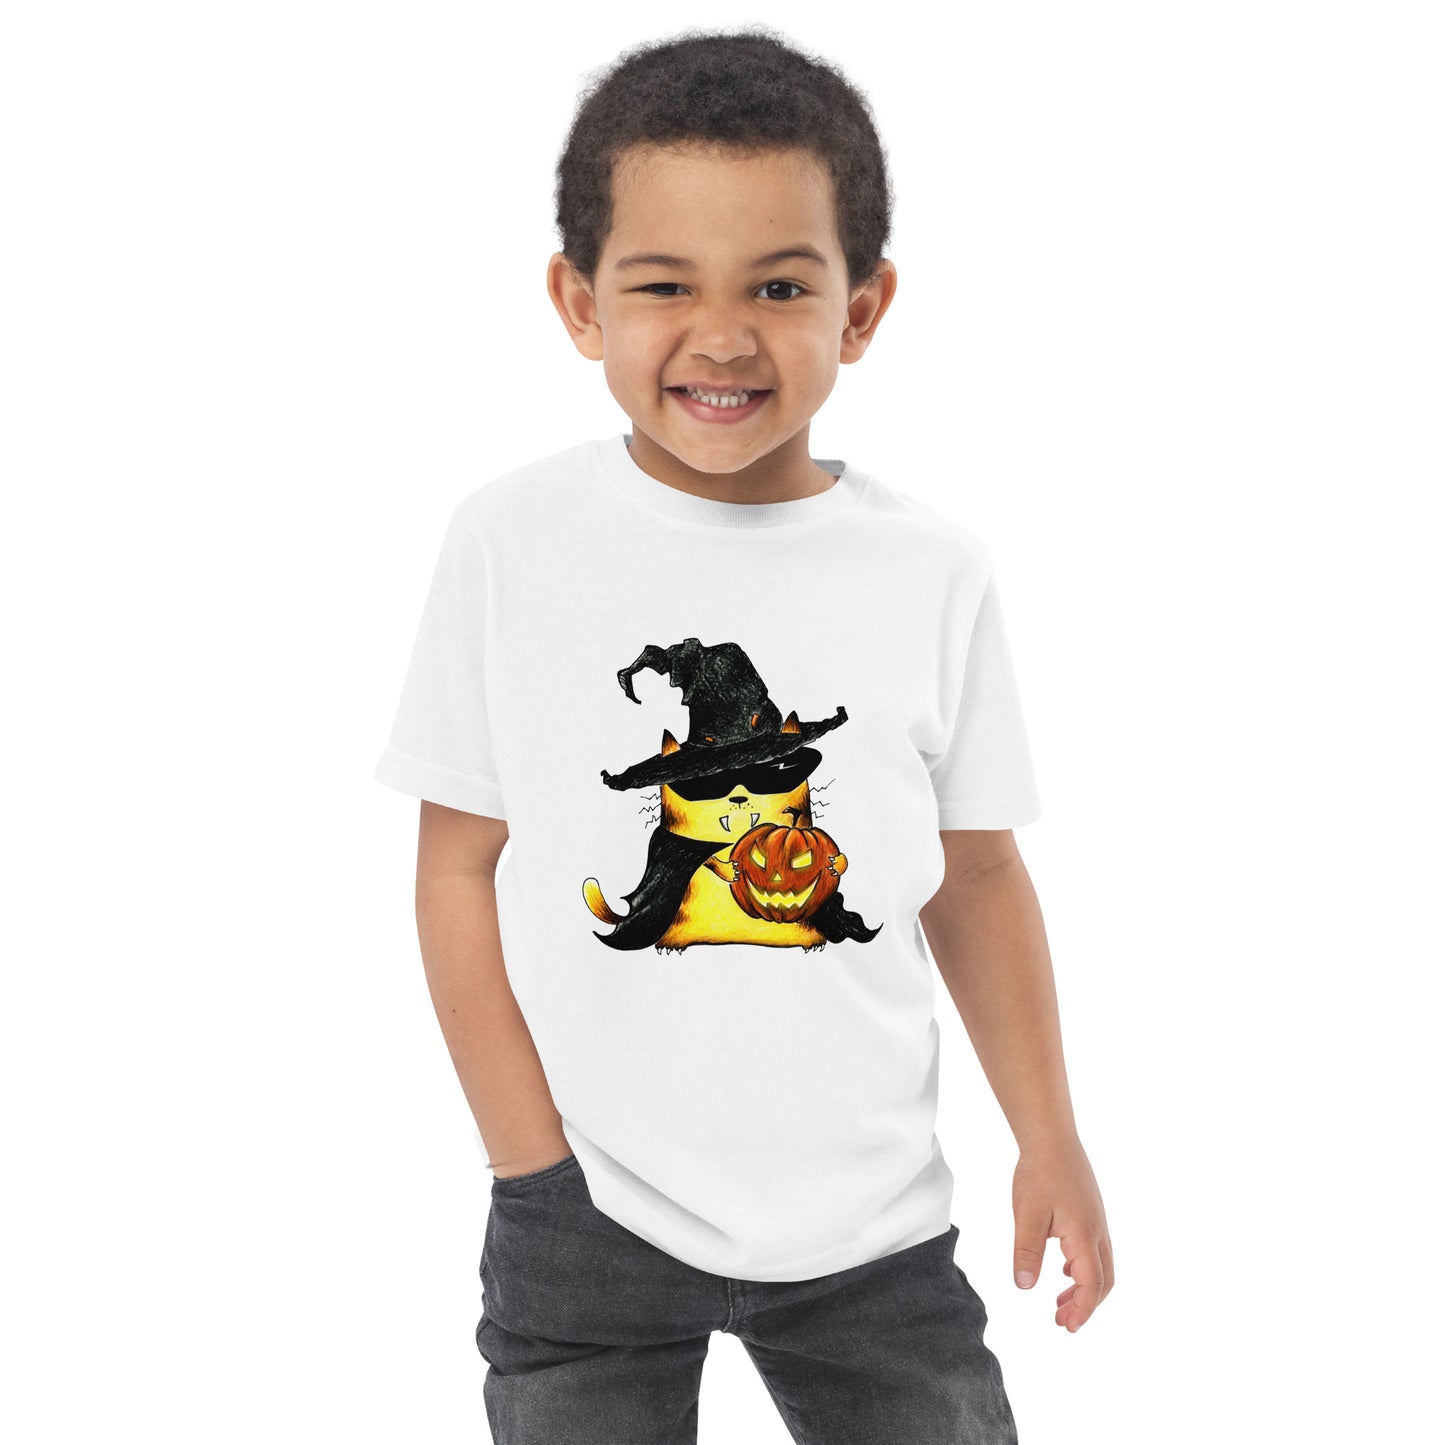 Toddler T-Shirt "Cat and Pumpkin"